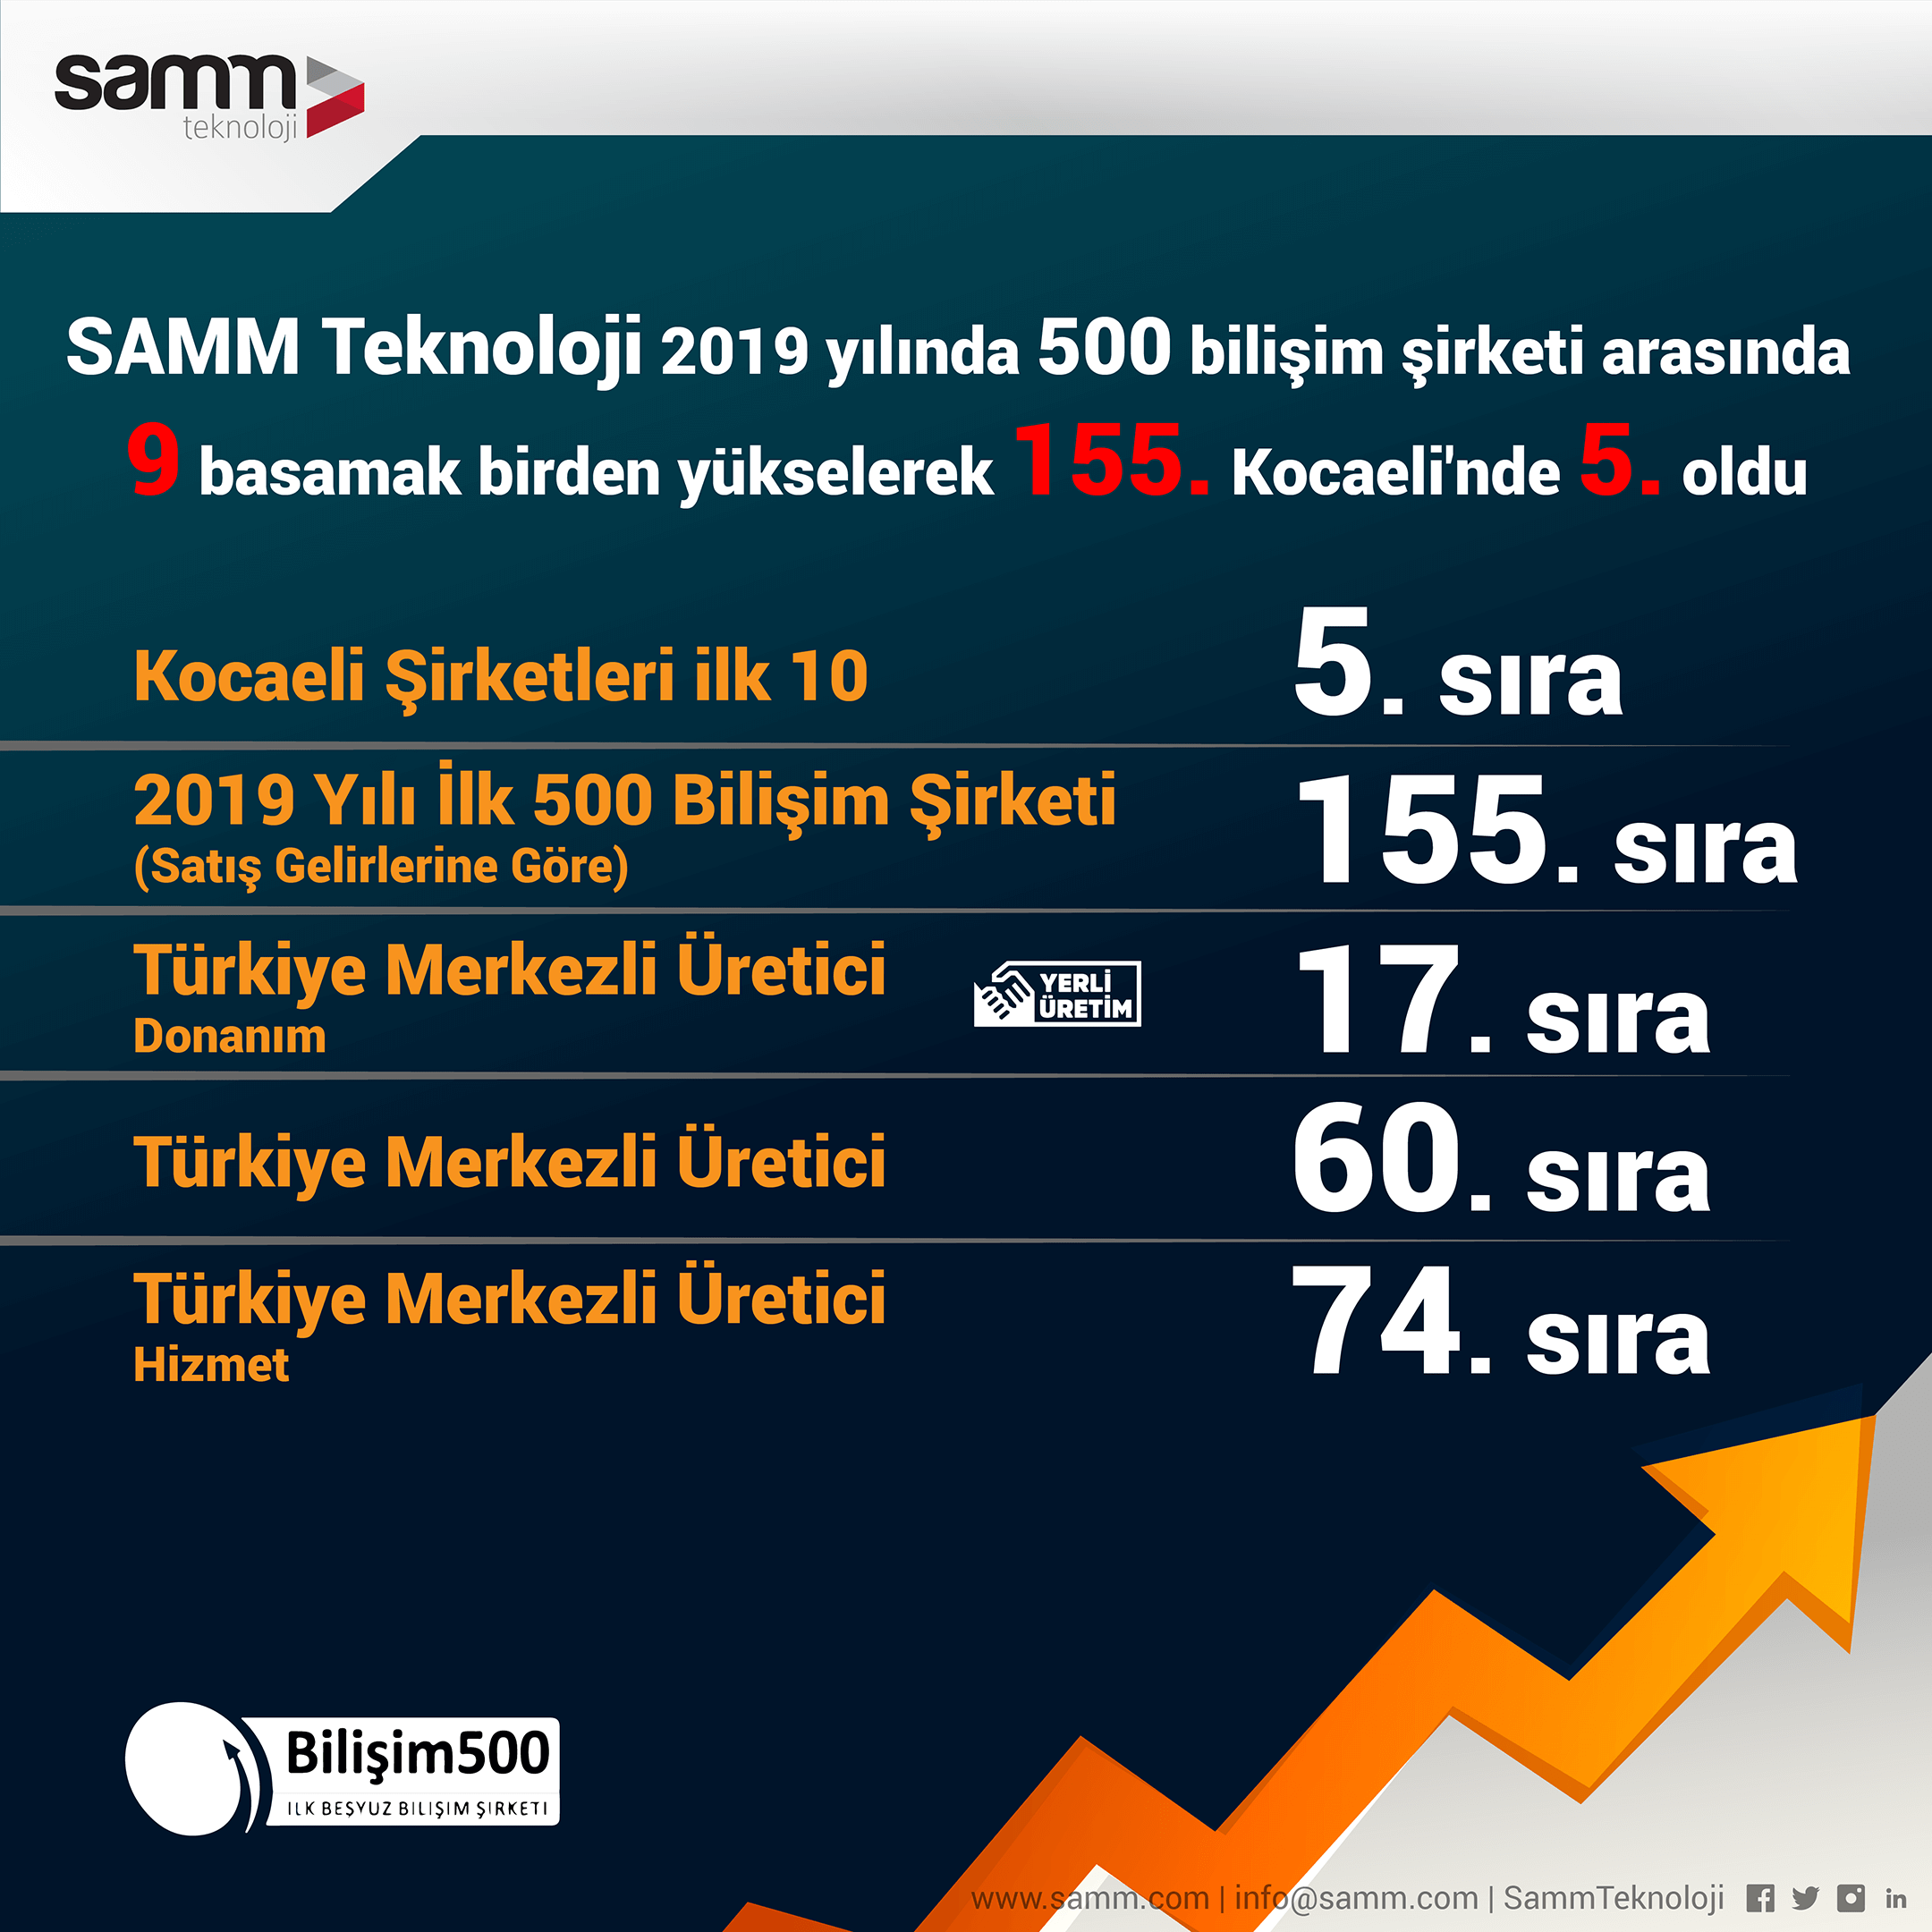 SAMM Teknoloji 9 basamak birden yükselerek 155. sırada yer aldı